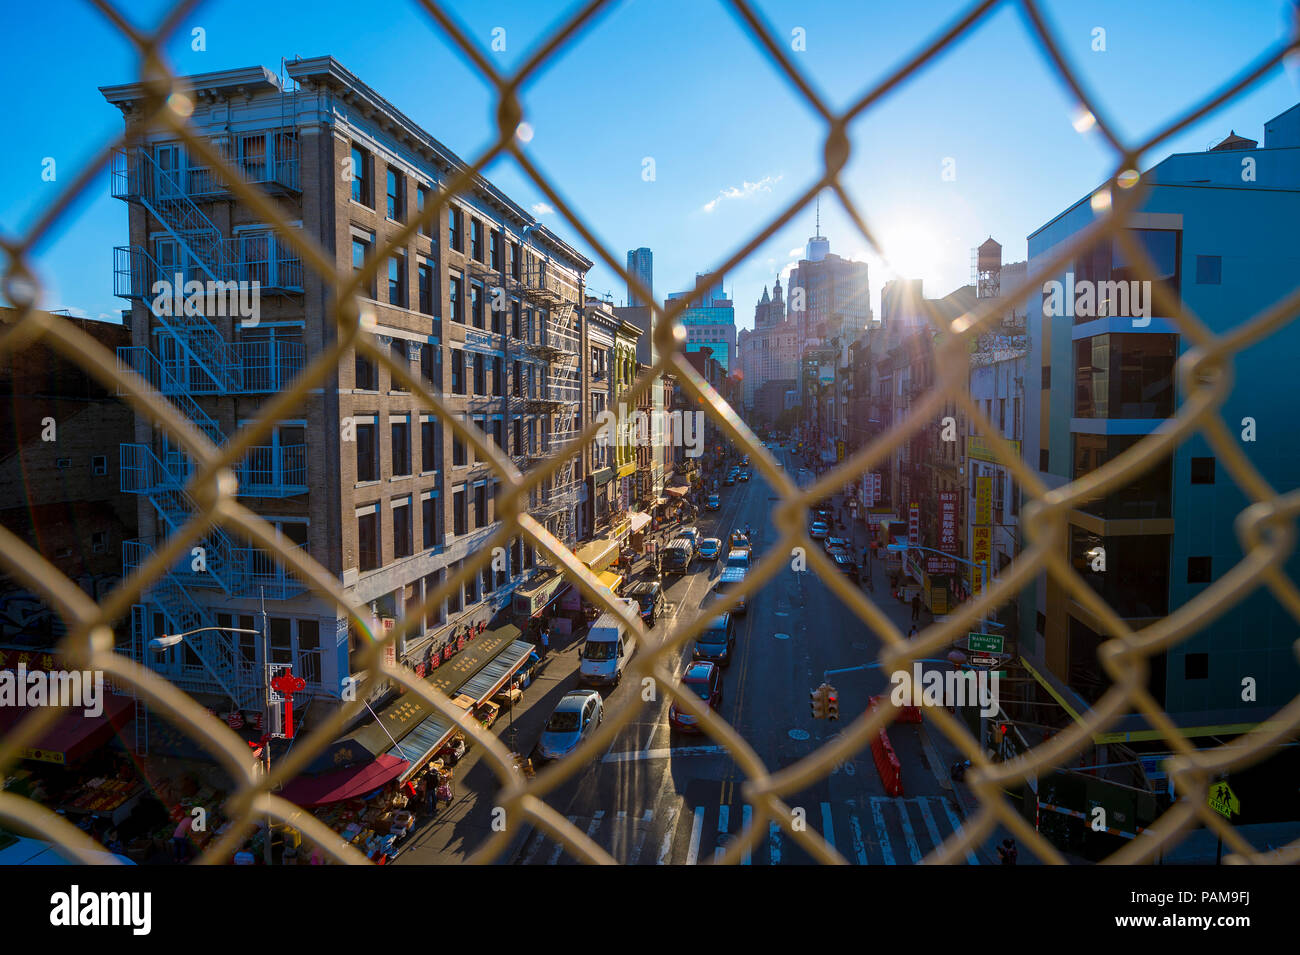 NEW YORK - circa 2017, août : Centre-ville de Manhattan et de Chinatown vue à travers une clôture de grillage simple torsion sur le pont de Manhattan. Banque D'Images